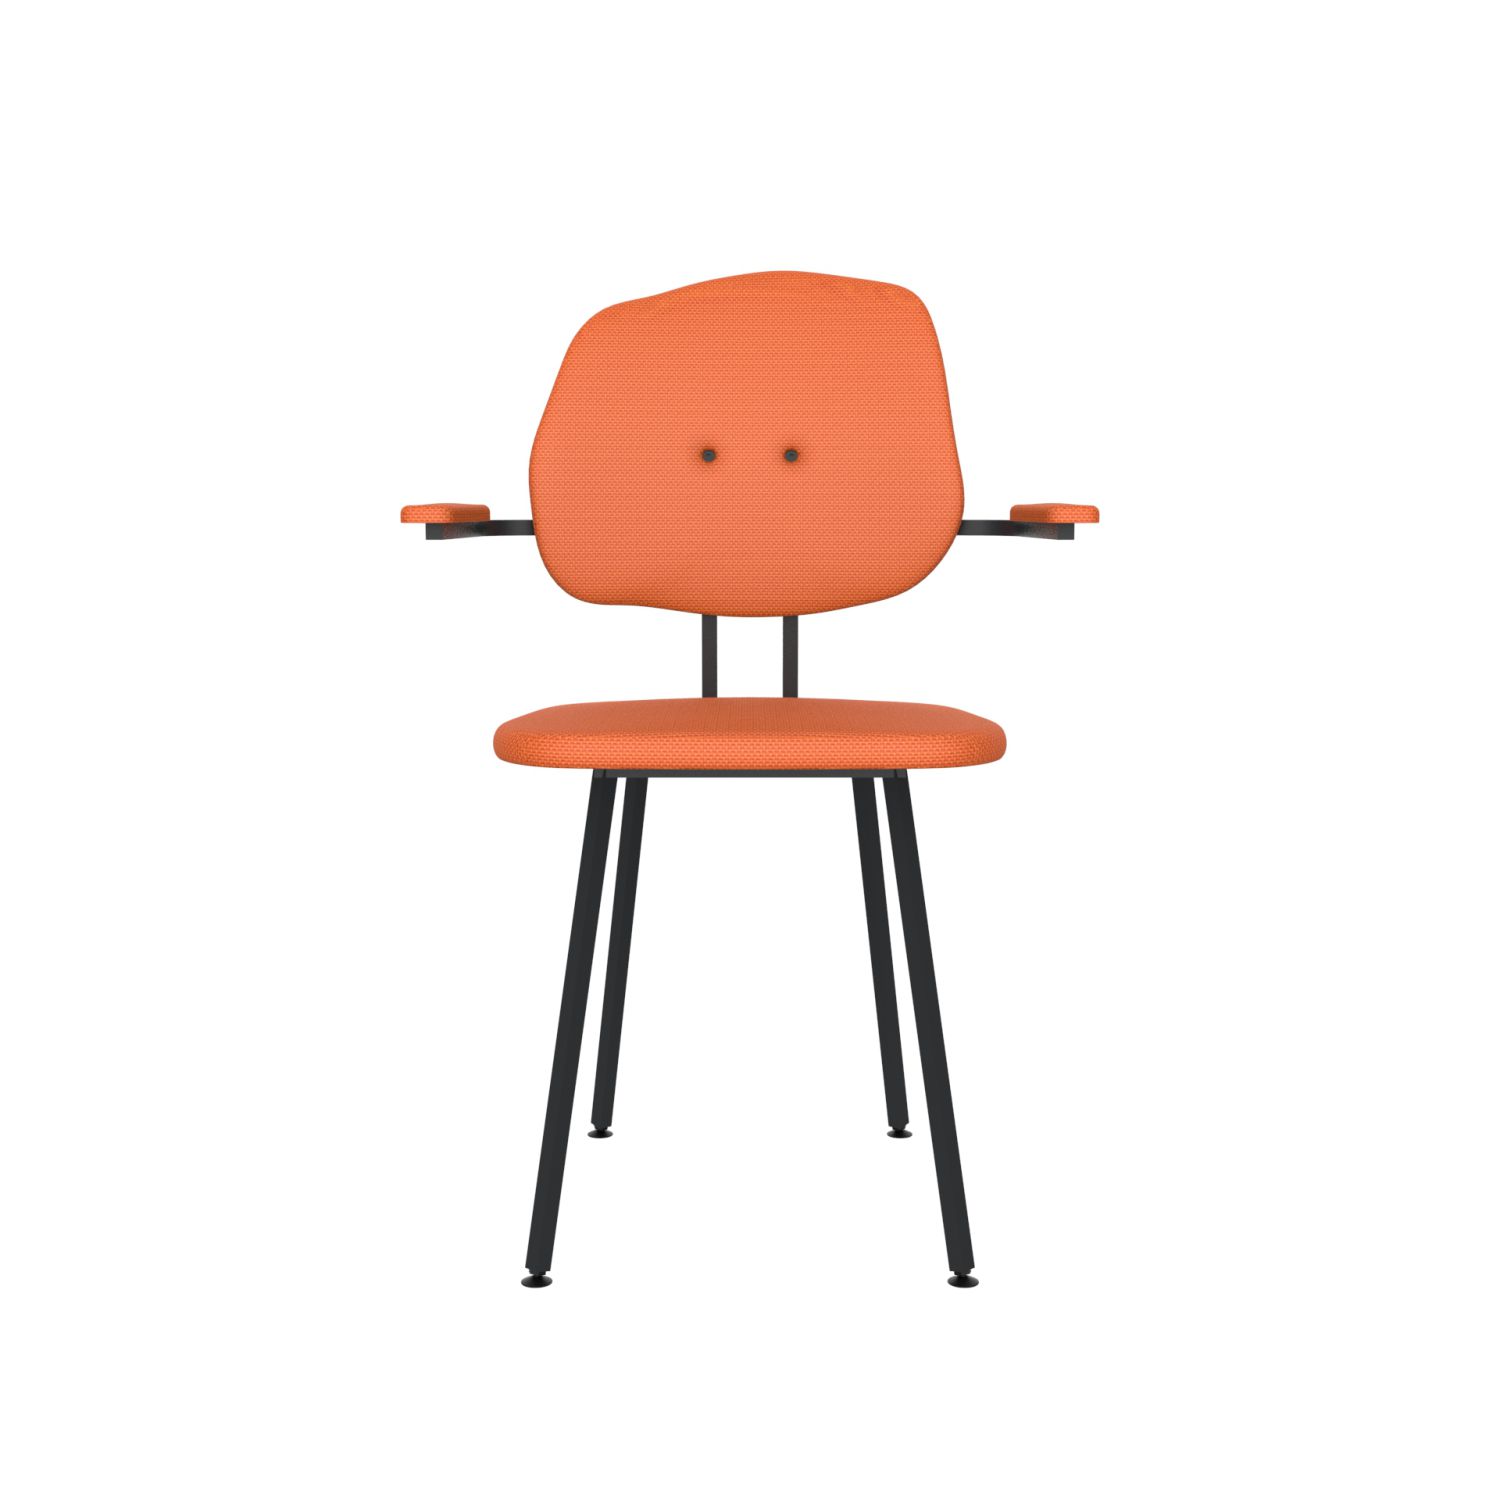 lensvelt maarten baas chair 102 not stackable with armrests backrest g burn orange 102 black ral9005 hard leg ends